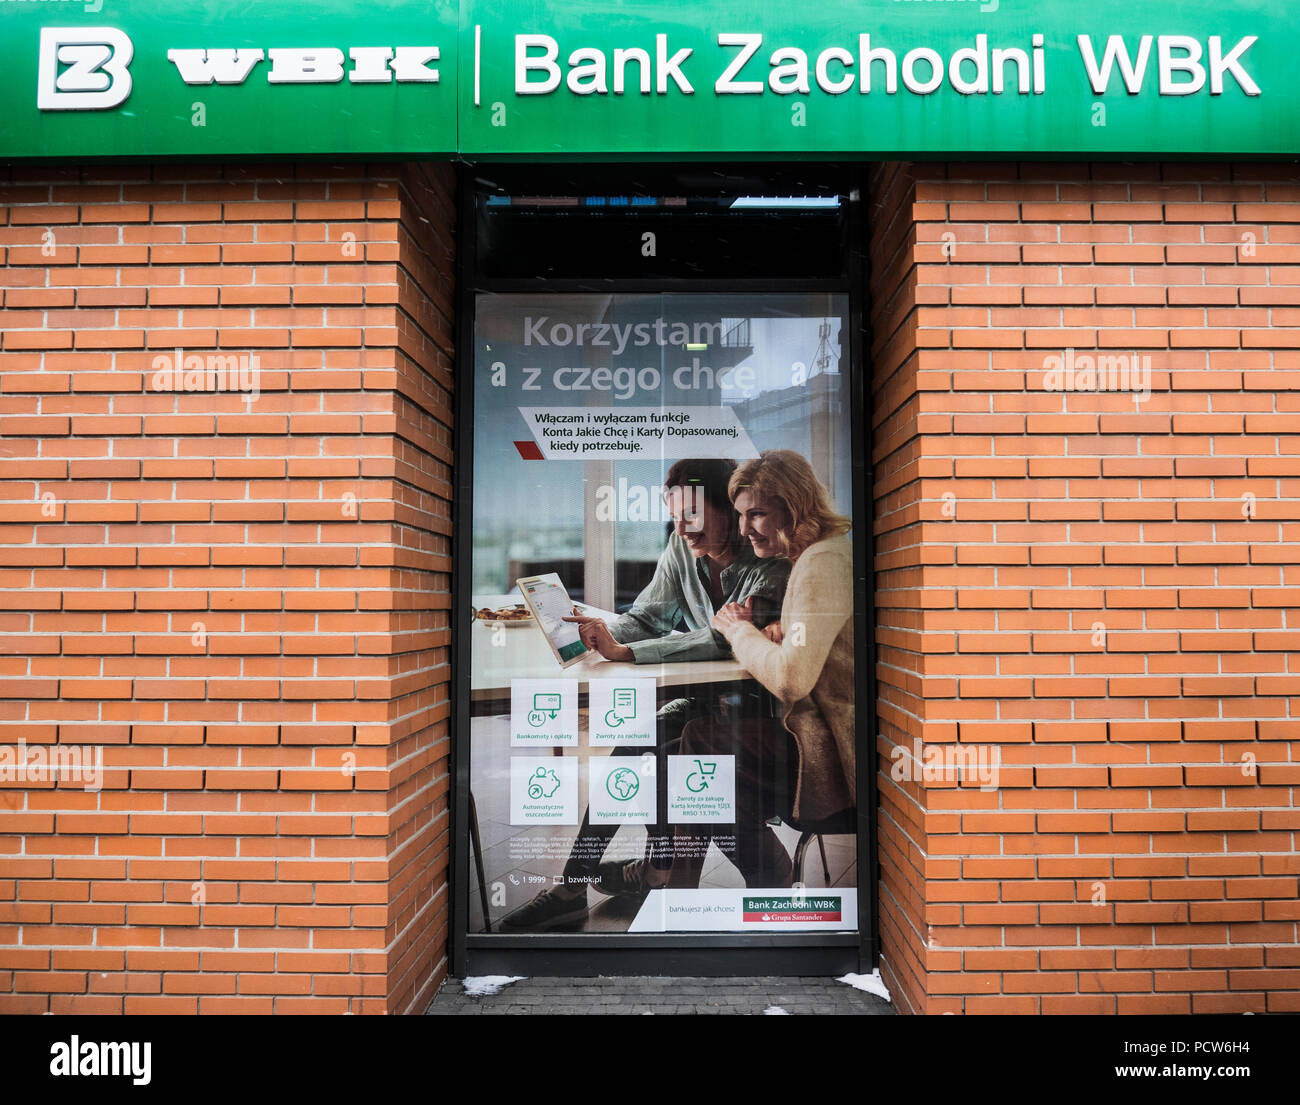 Bank Zachodni WBK in Krakau. Bank Zachodni WBK (BZ WBK) ist eine polnische Universalbank. Es ist die drittgrößte Bank in Polen in Bezug auf die Vermögenswerte der Wert und die Zahl der Verkaufsstellen. Es wurde im Jahr 2001 durch die Fusion der Bank Zachodni S.A. und Wielkopolski Bank Kredytowy SA gebildet. Seit 2011 hat die Bank durch die spanische Bank Santander Gruppe geführt. Stockfoto